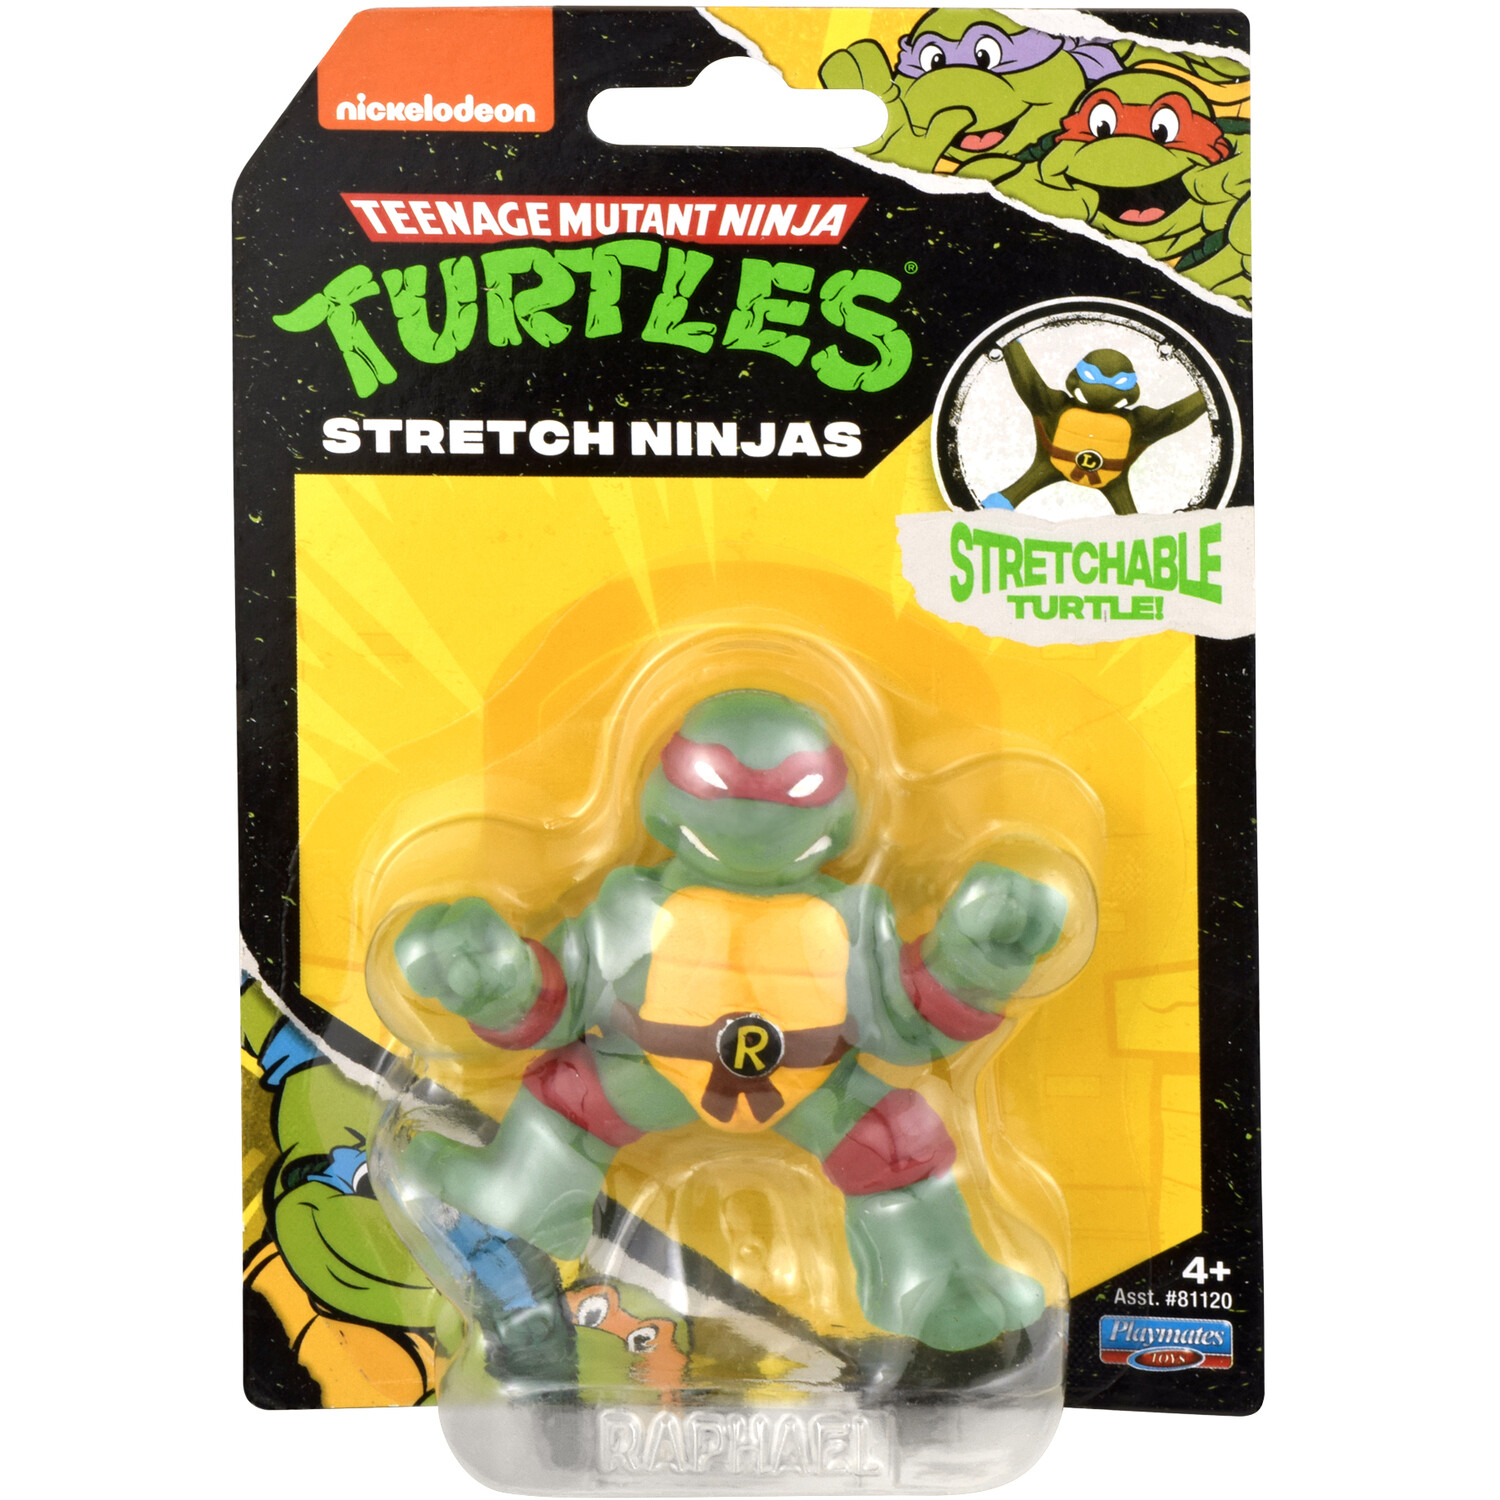 Teenage Mutant Ninja Turtles Mini Ninja Stretch Figures Image 1